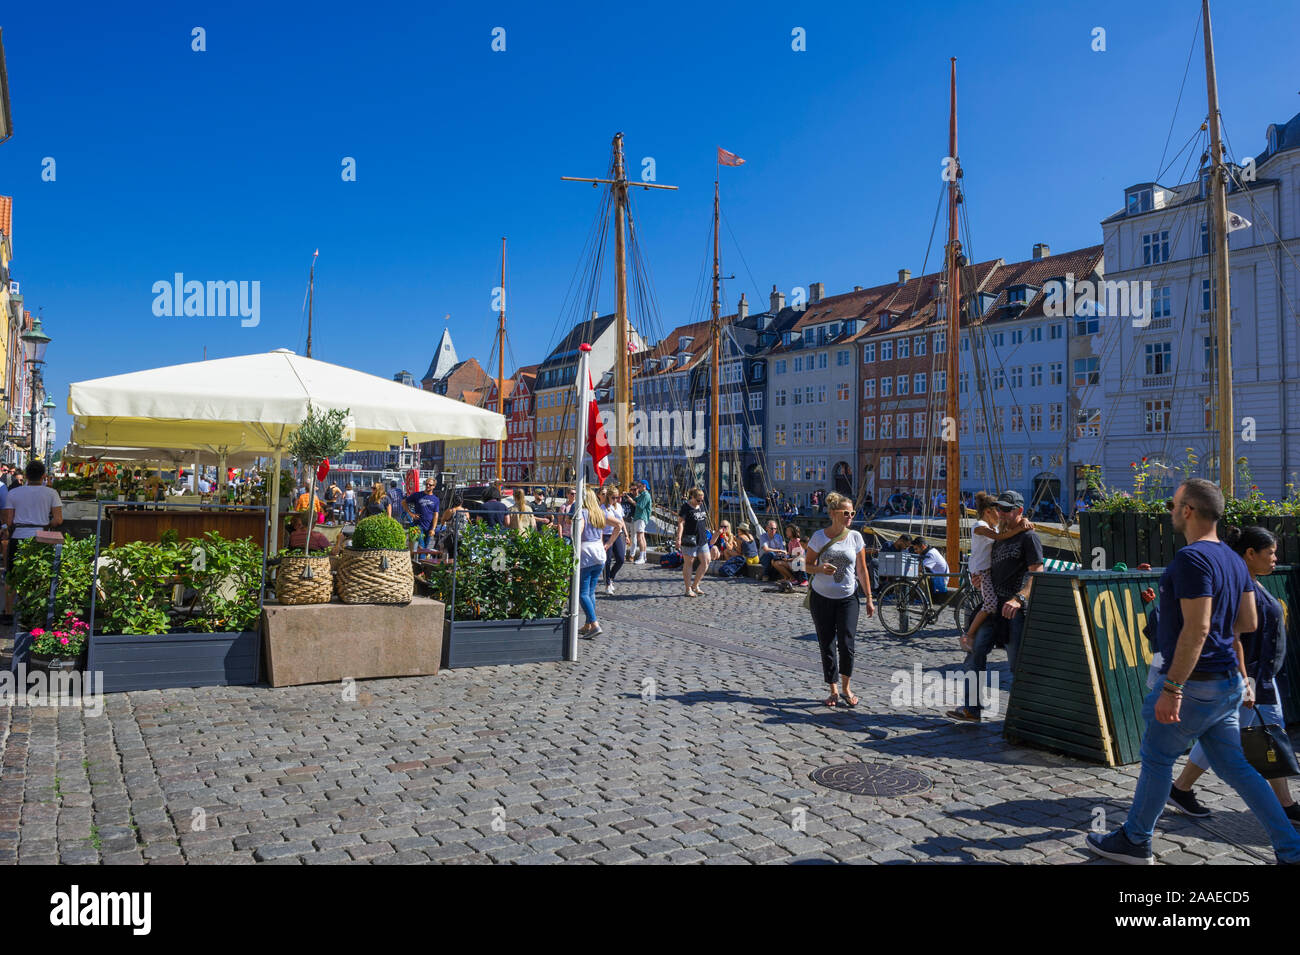 People walking along the Waterfront in Copenhagen, Denmark Stock Photo